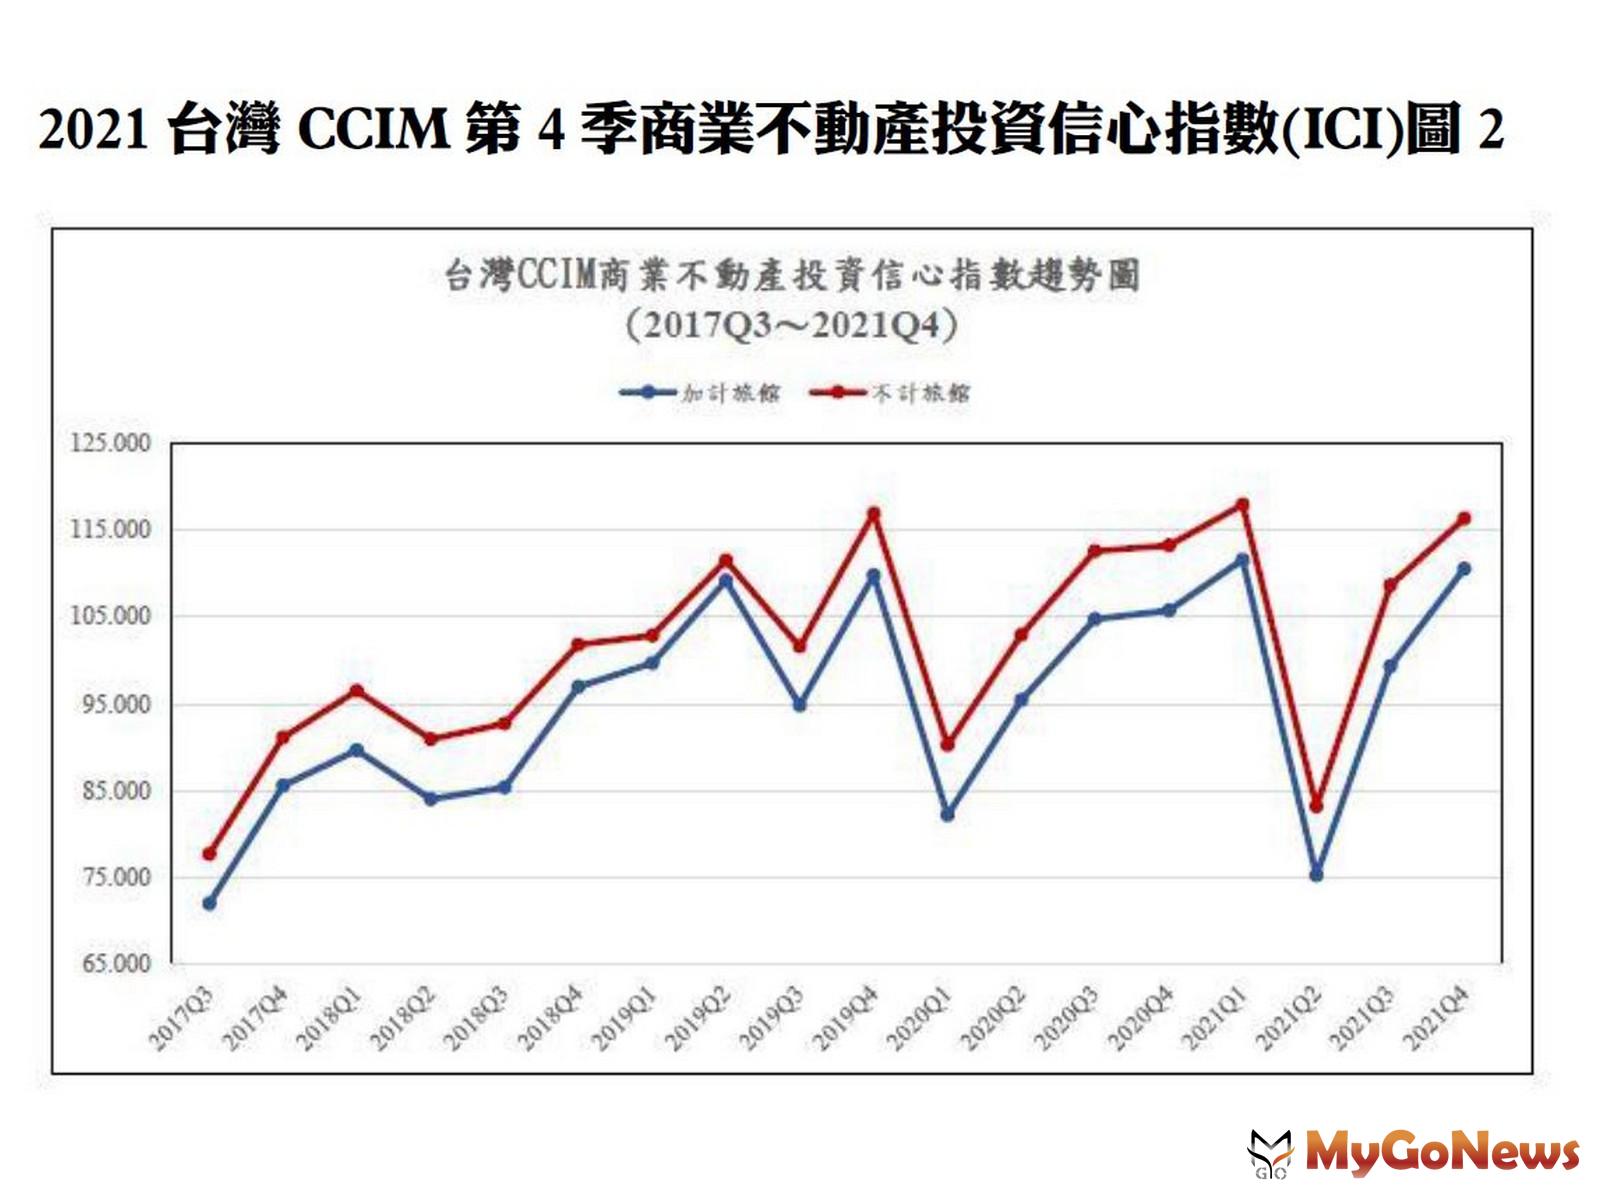 2021台灣CCIM第四季商業不動產投資信心指數(ICI)圖2 MyGoNews房地產新聞 趨勢報導